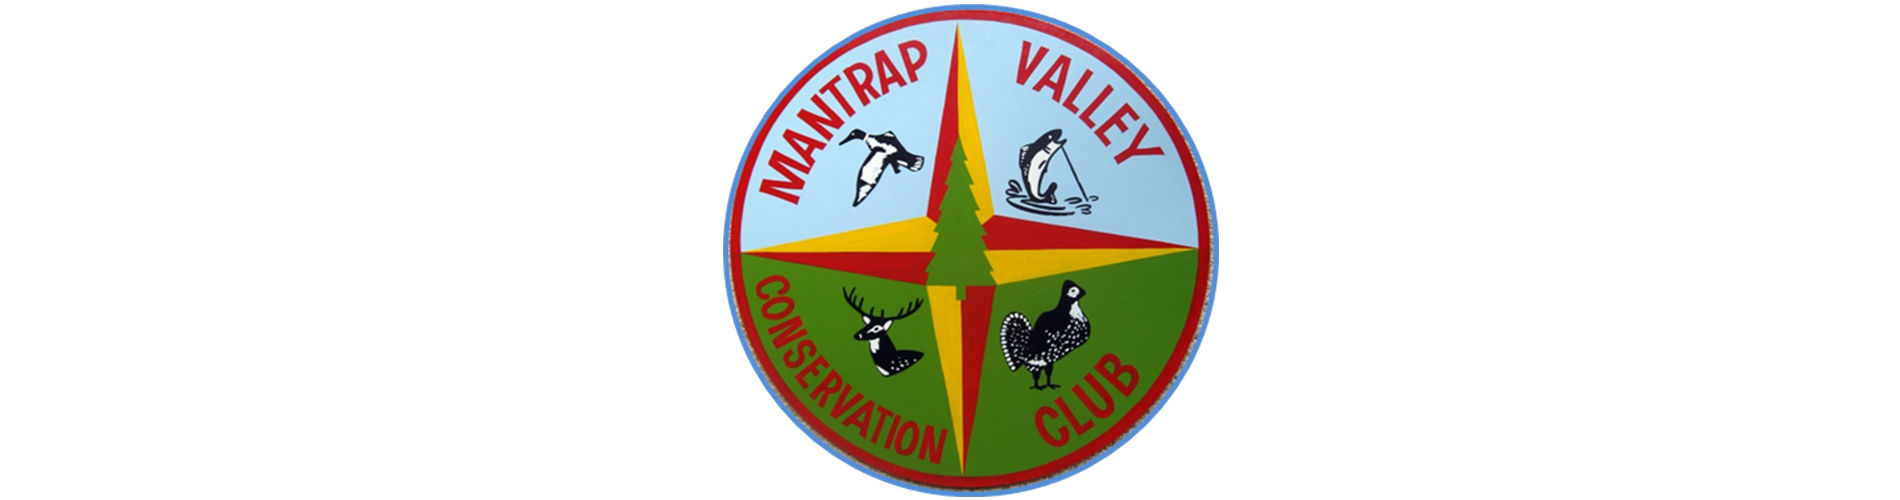 MVCC Logo